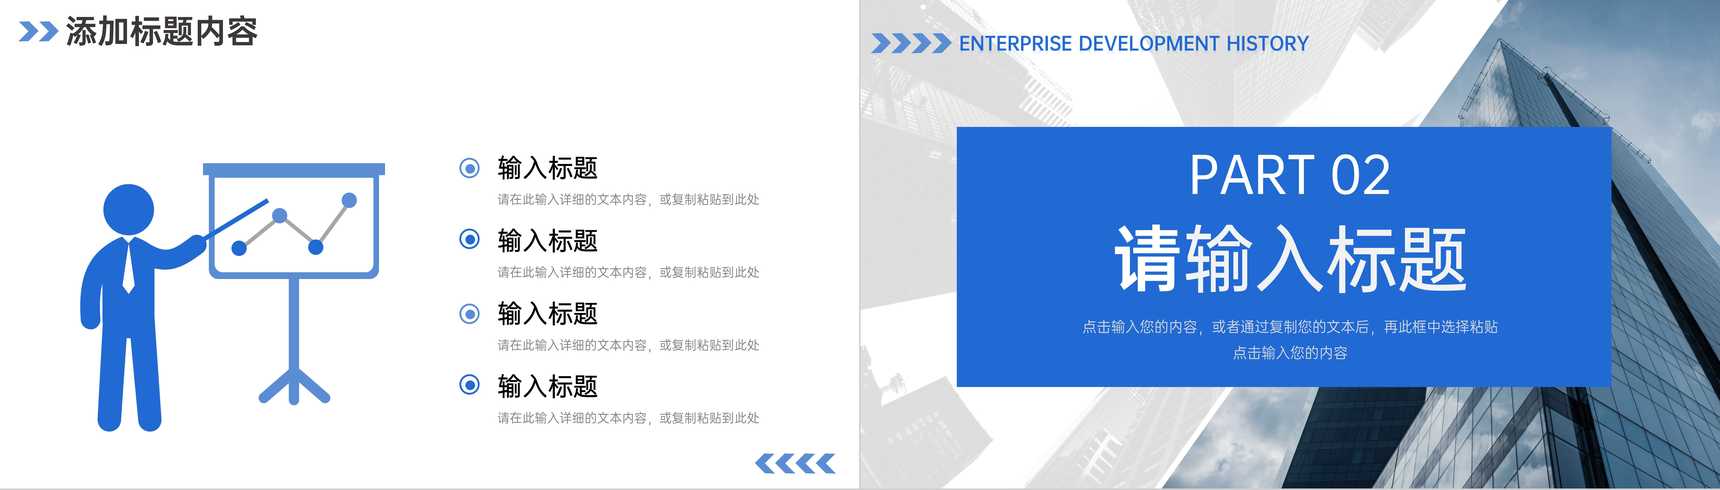 蓝色大气企业发展历程公司情况介绍PPT模板-4